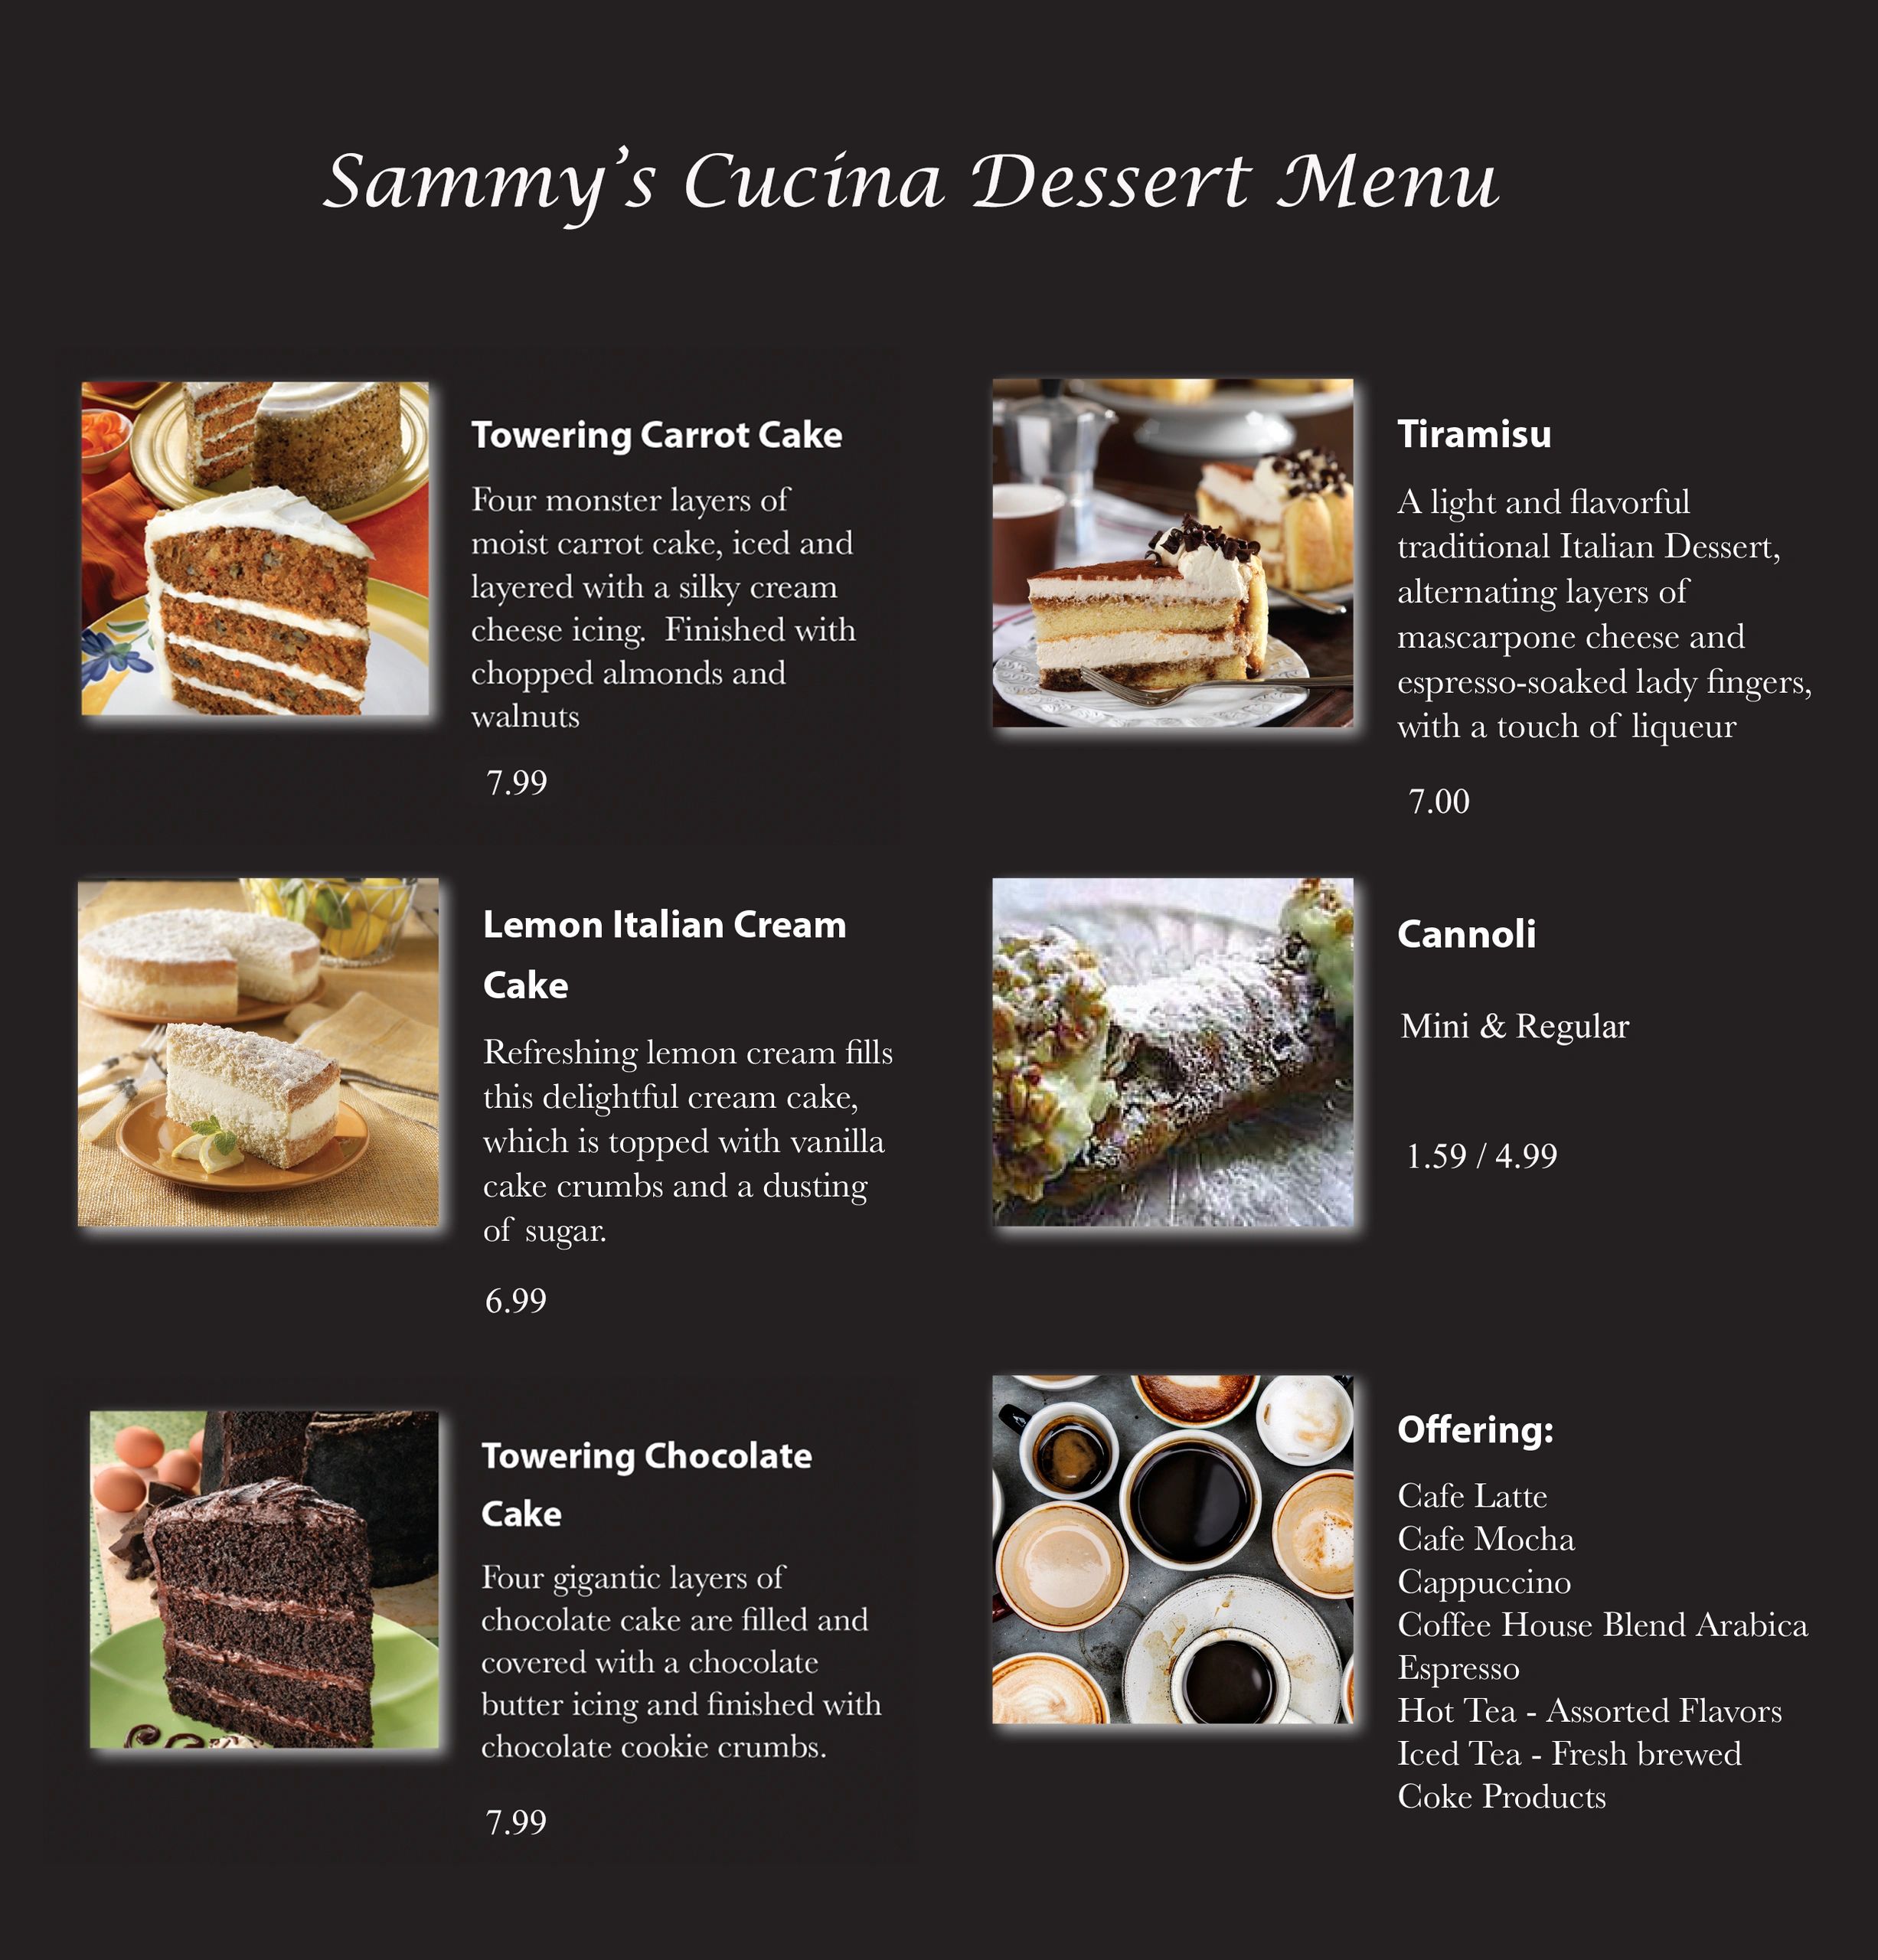 Sammy's Cucina Dessert Menu